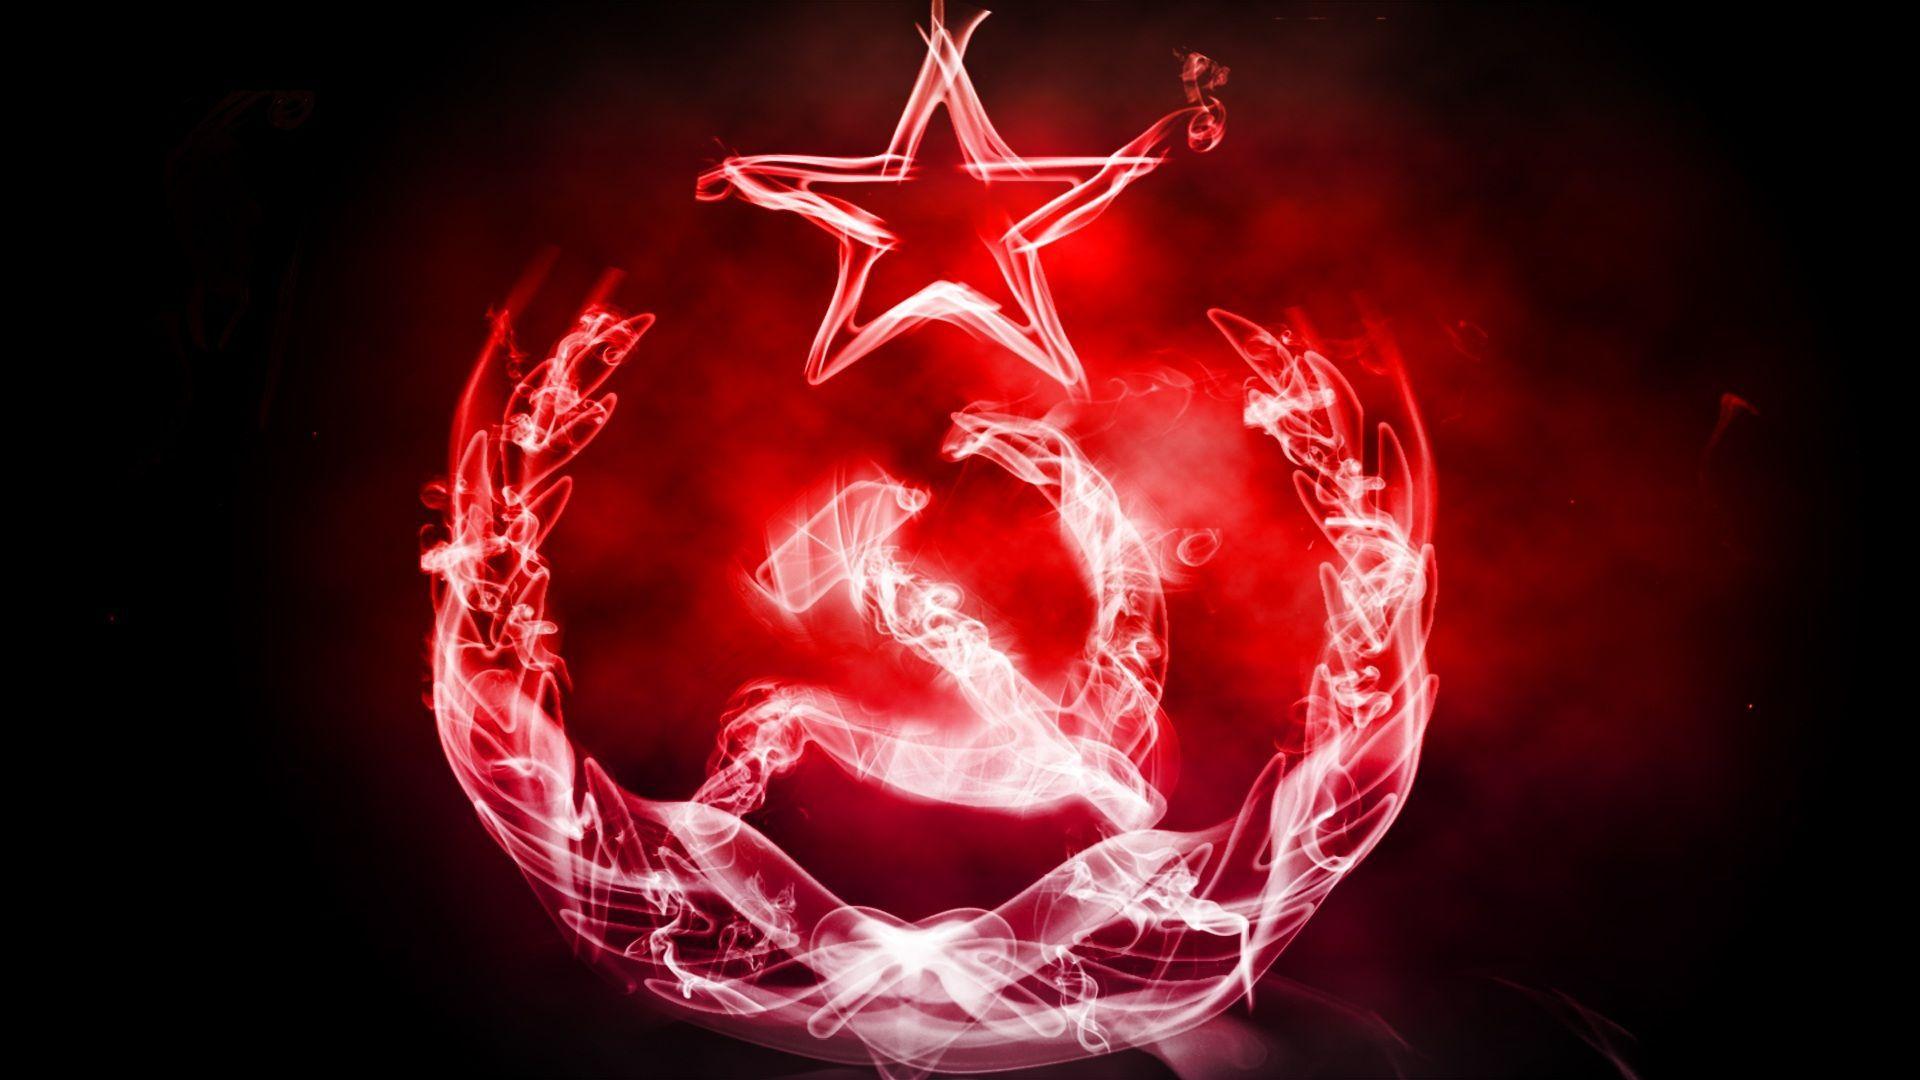 Communist Wallpaper, High Quality Communist Background